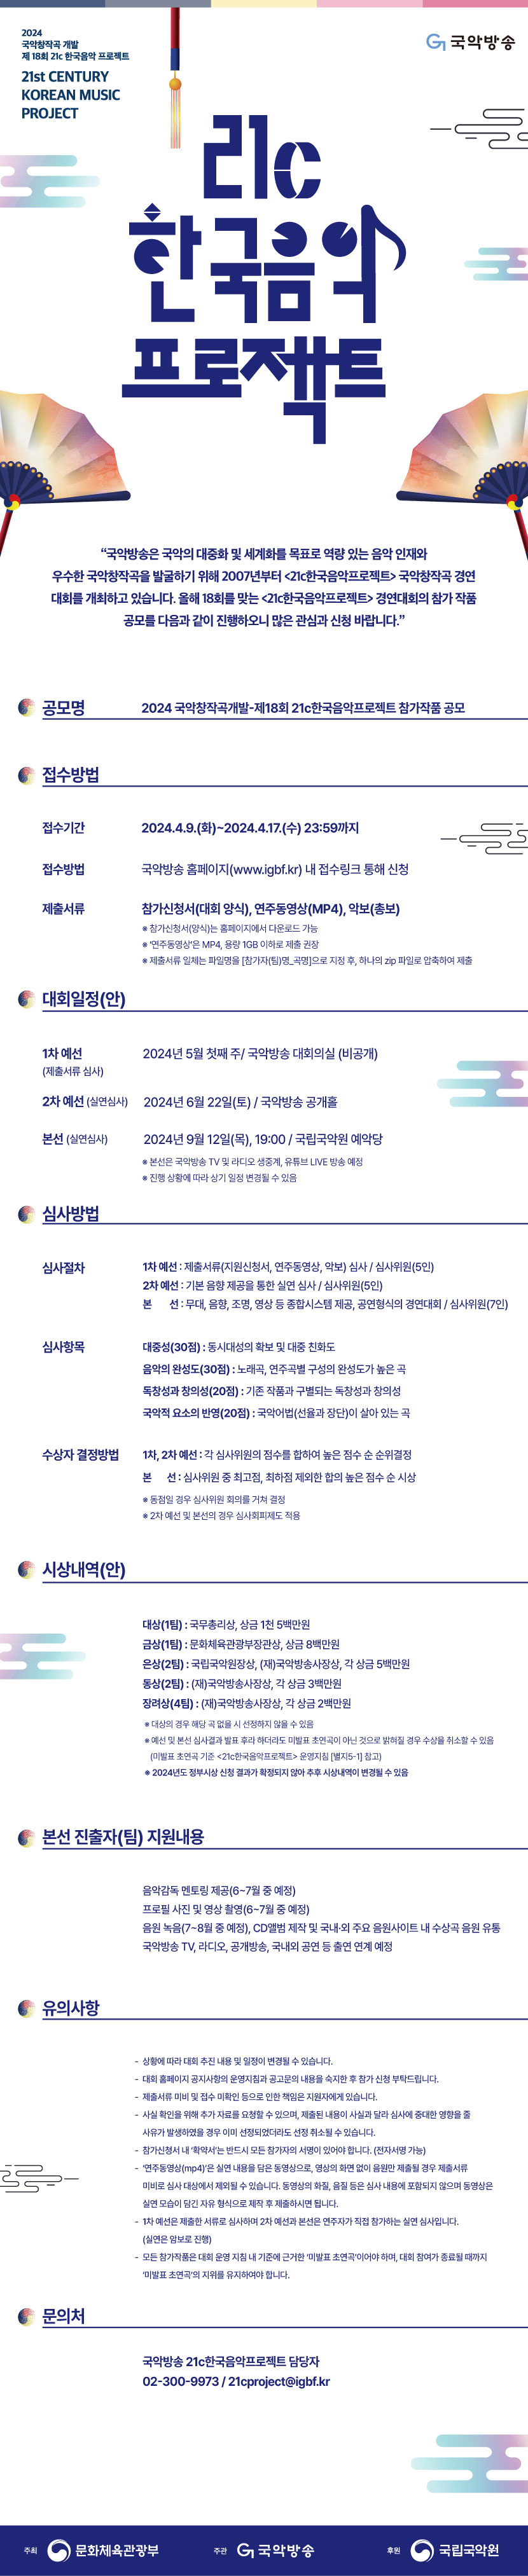 2024-18회-21c한국음악프로젝트-참가작품-공모_웹전단.jpg